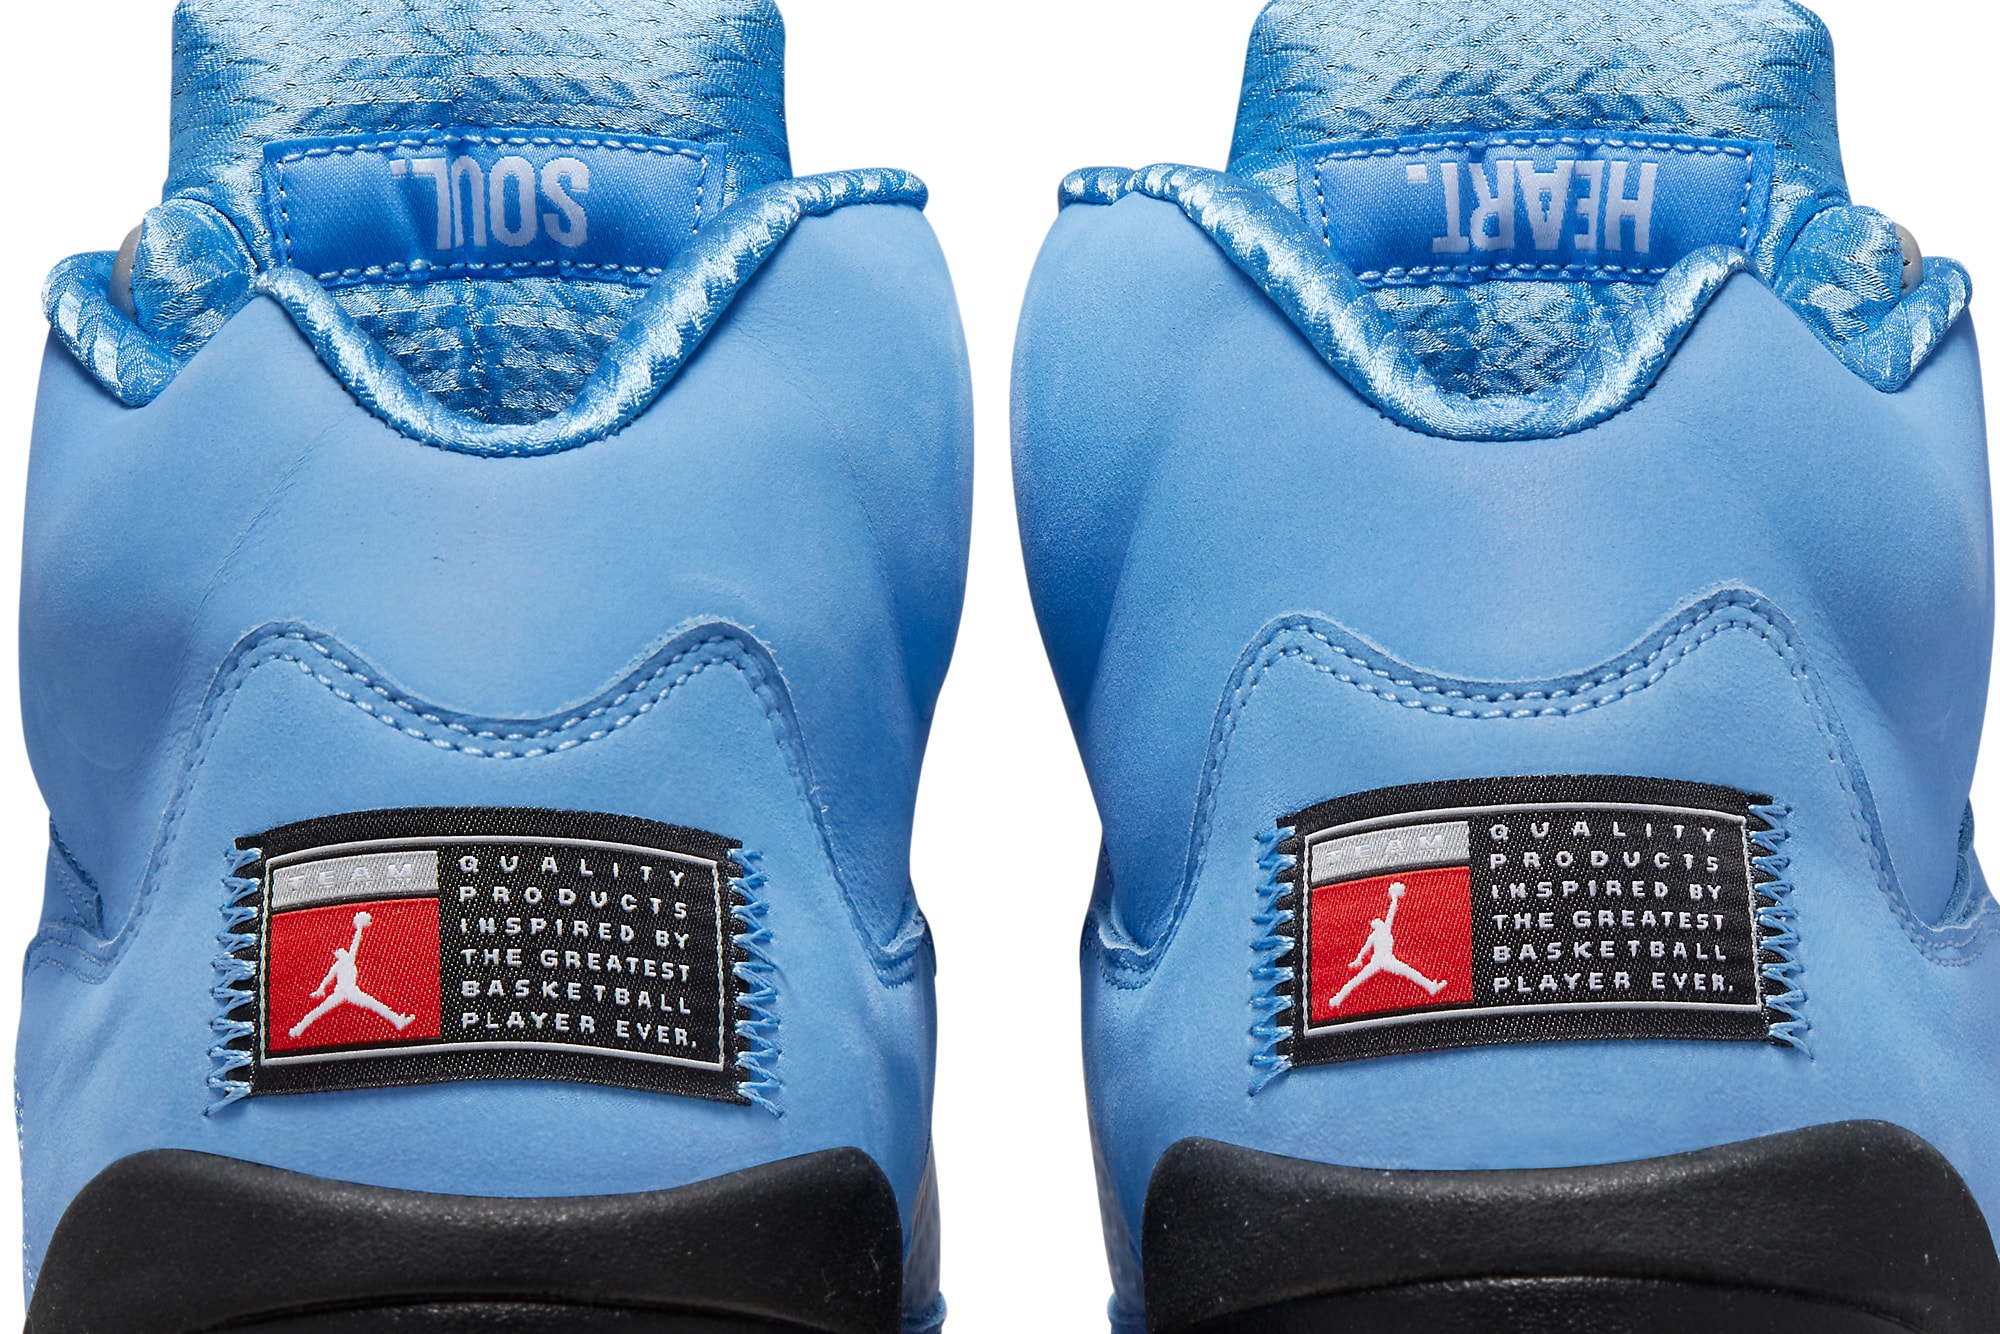 Jordan Air Jordan 5 Retro UNC University Blue - Lavish Life Sneakers